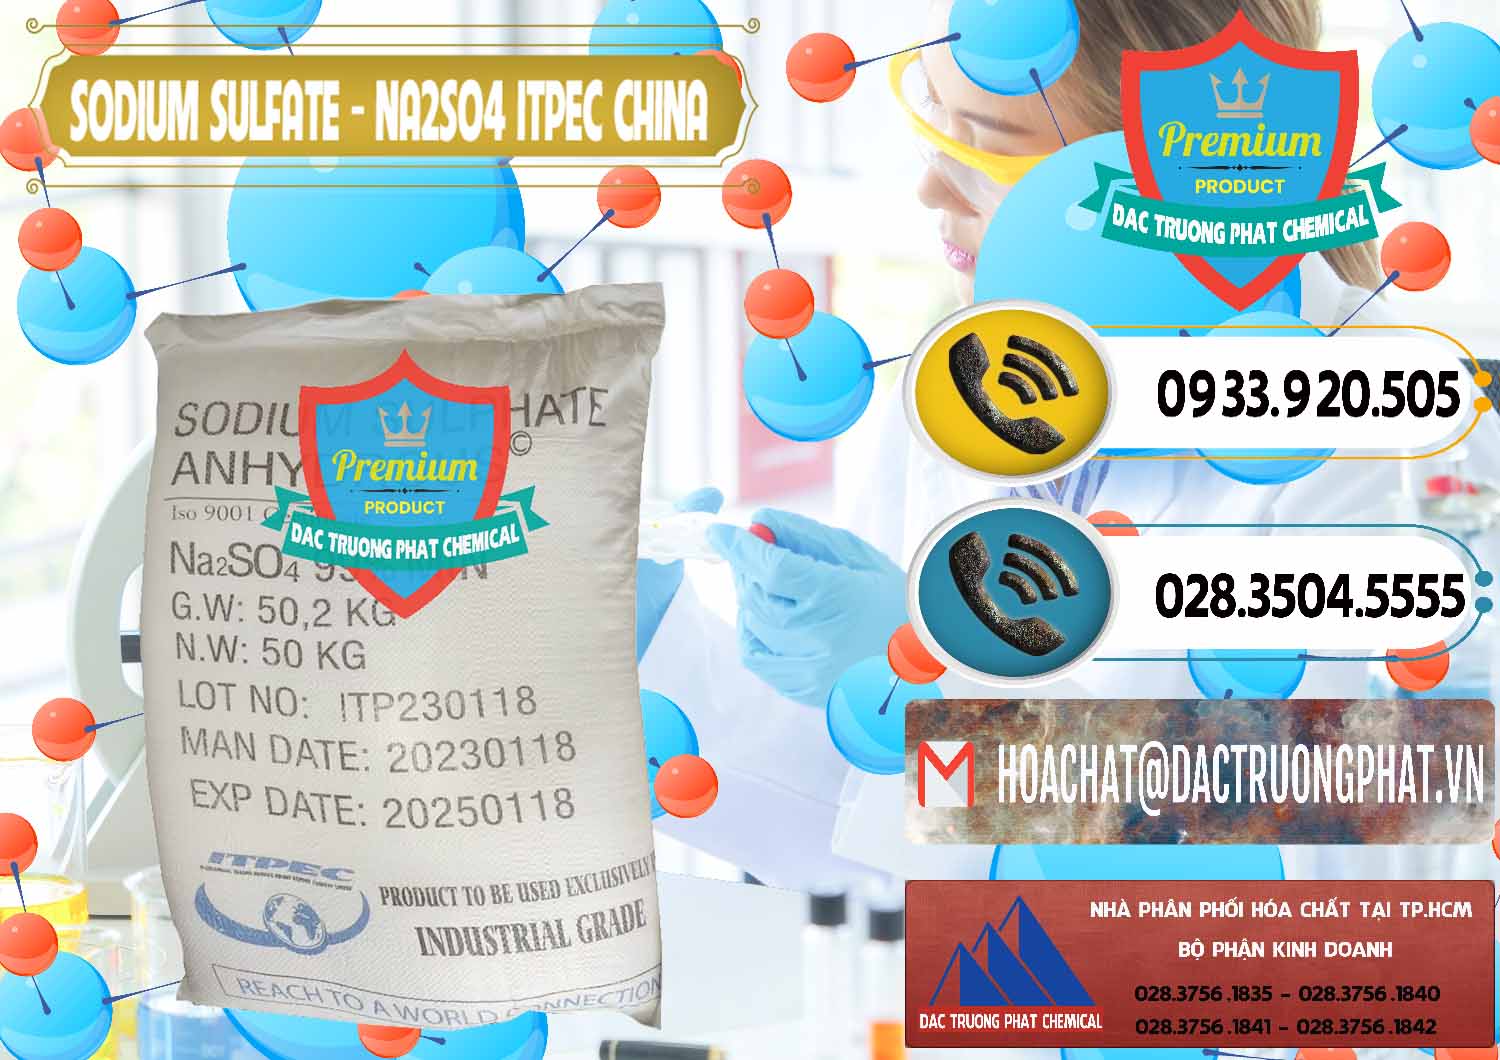 Chuyên kinh doanh & bán Sodium Sulphate - Muối Sunfat Na2SO4 ITPEC Trung Quốc China - 0340 - Công ty chuyên bán & phân phối hóa chất tại TP.HCM - hoachatdetnhuom.vn